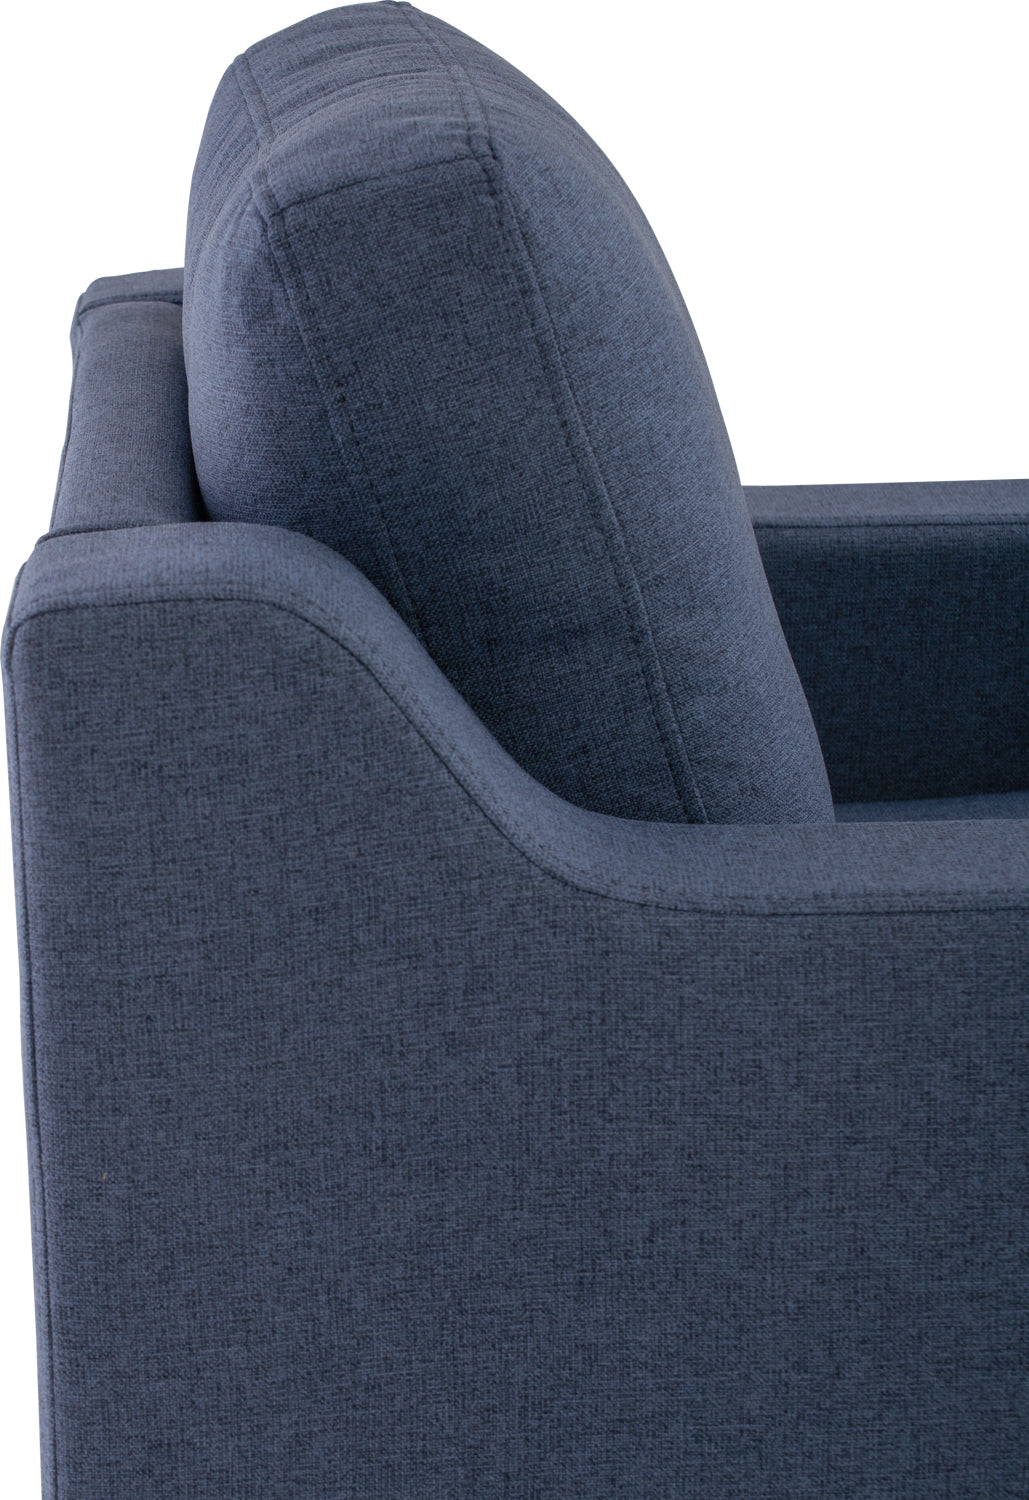 DULCET II Sofa Single Seater